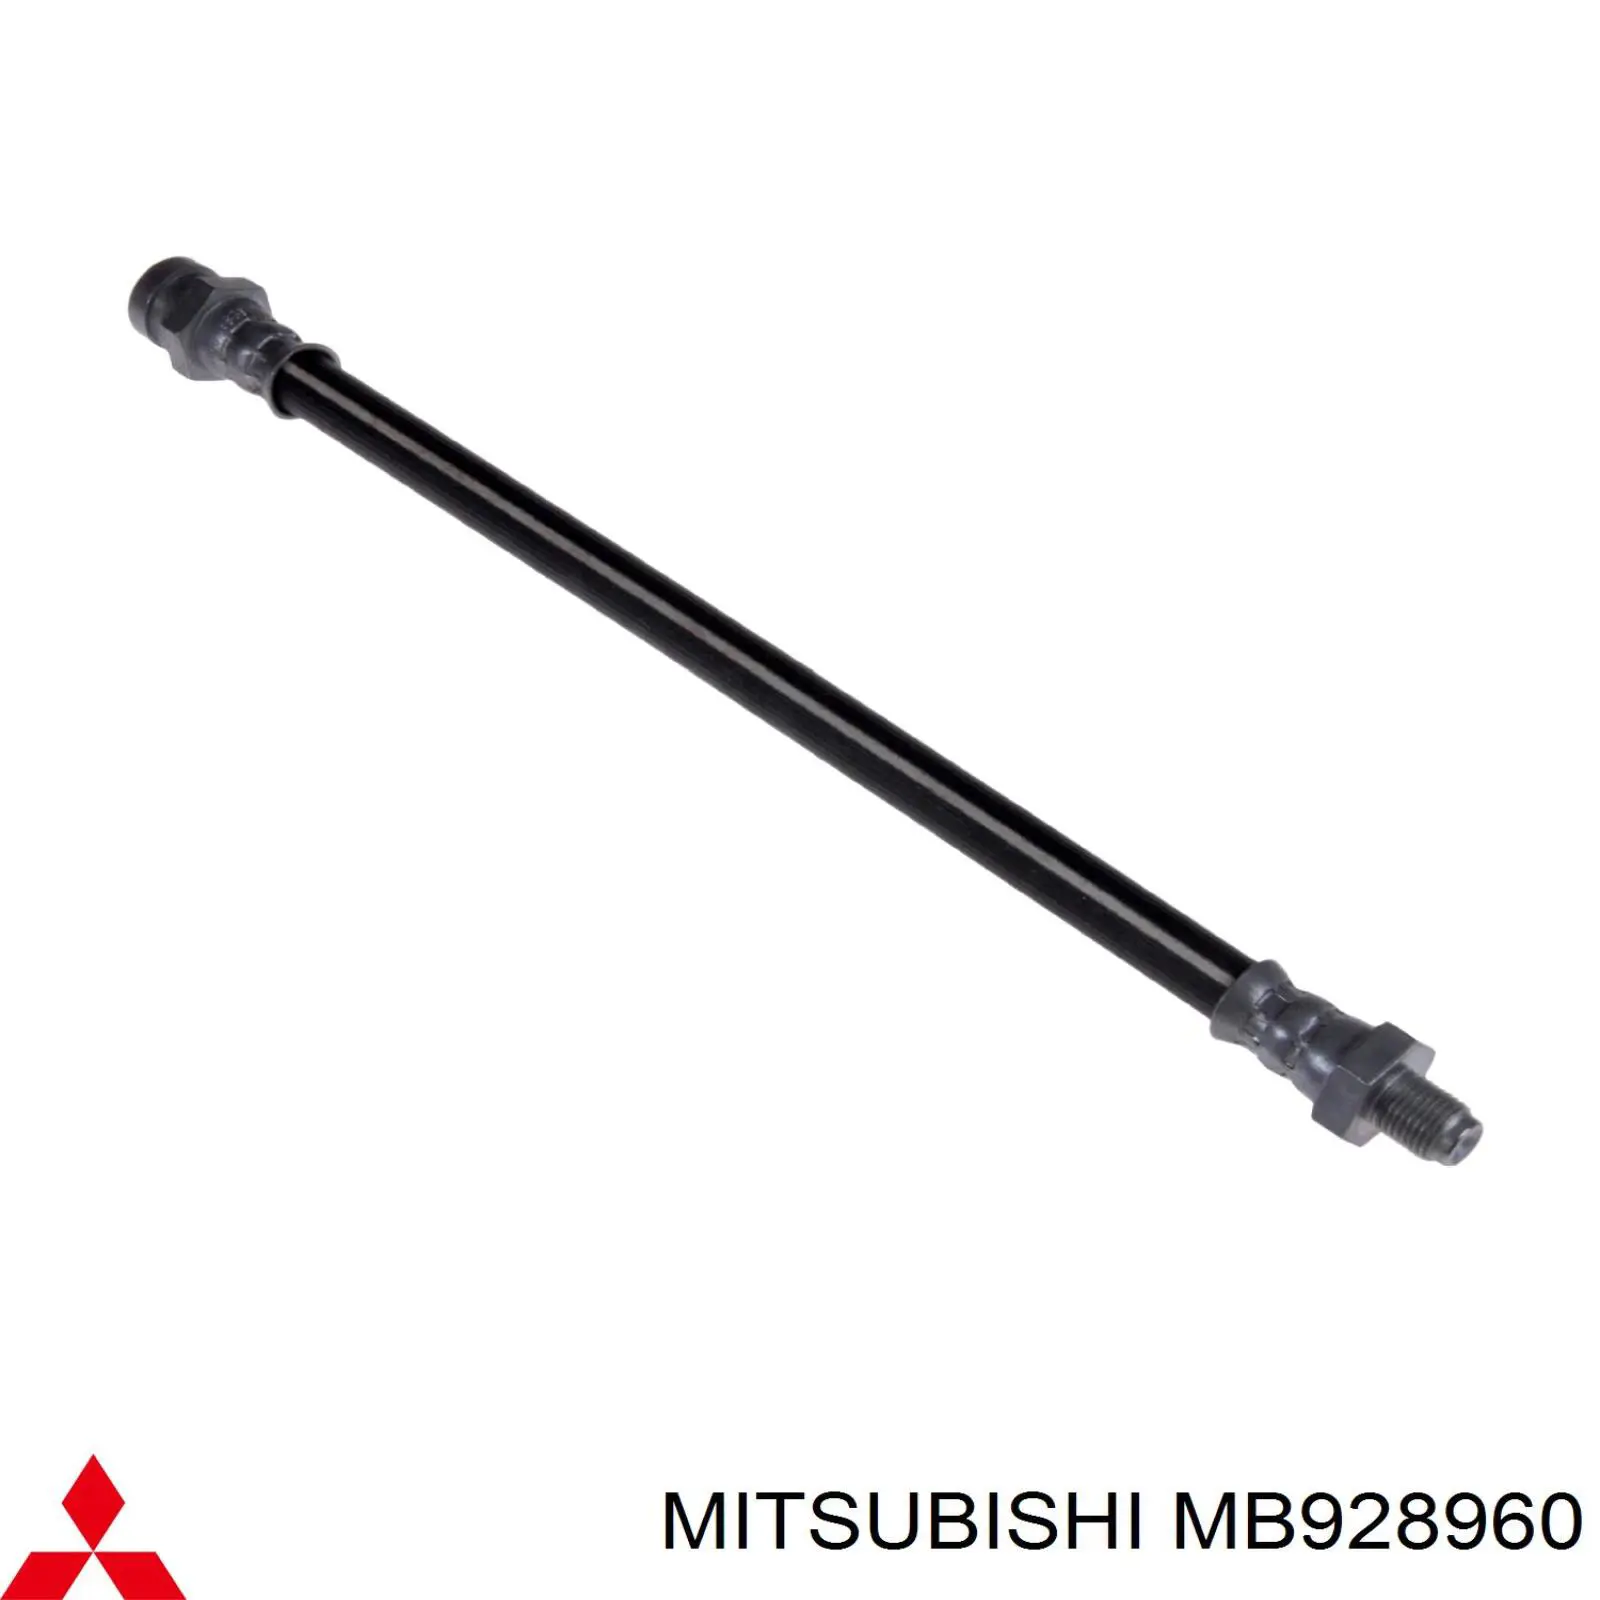 MB857679 Mitsubishi